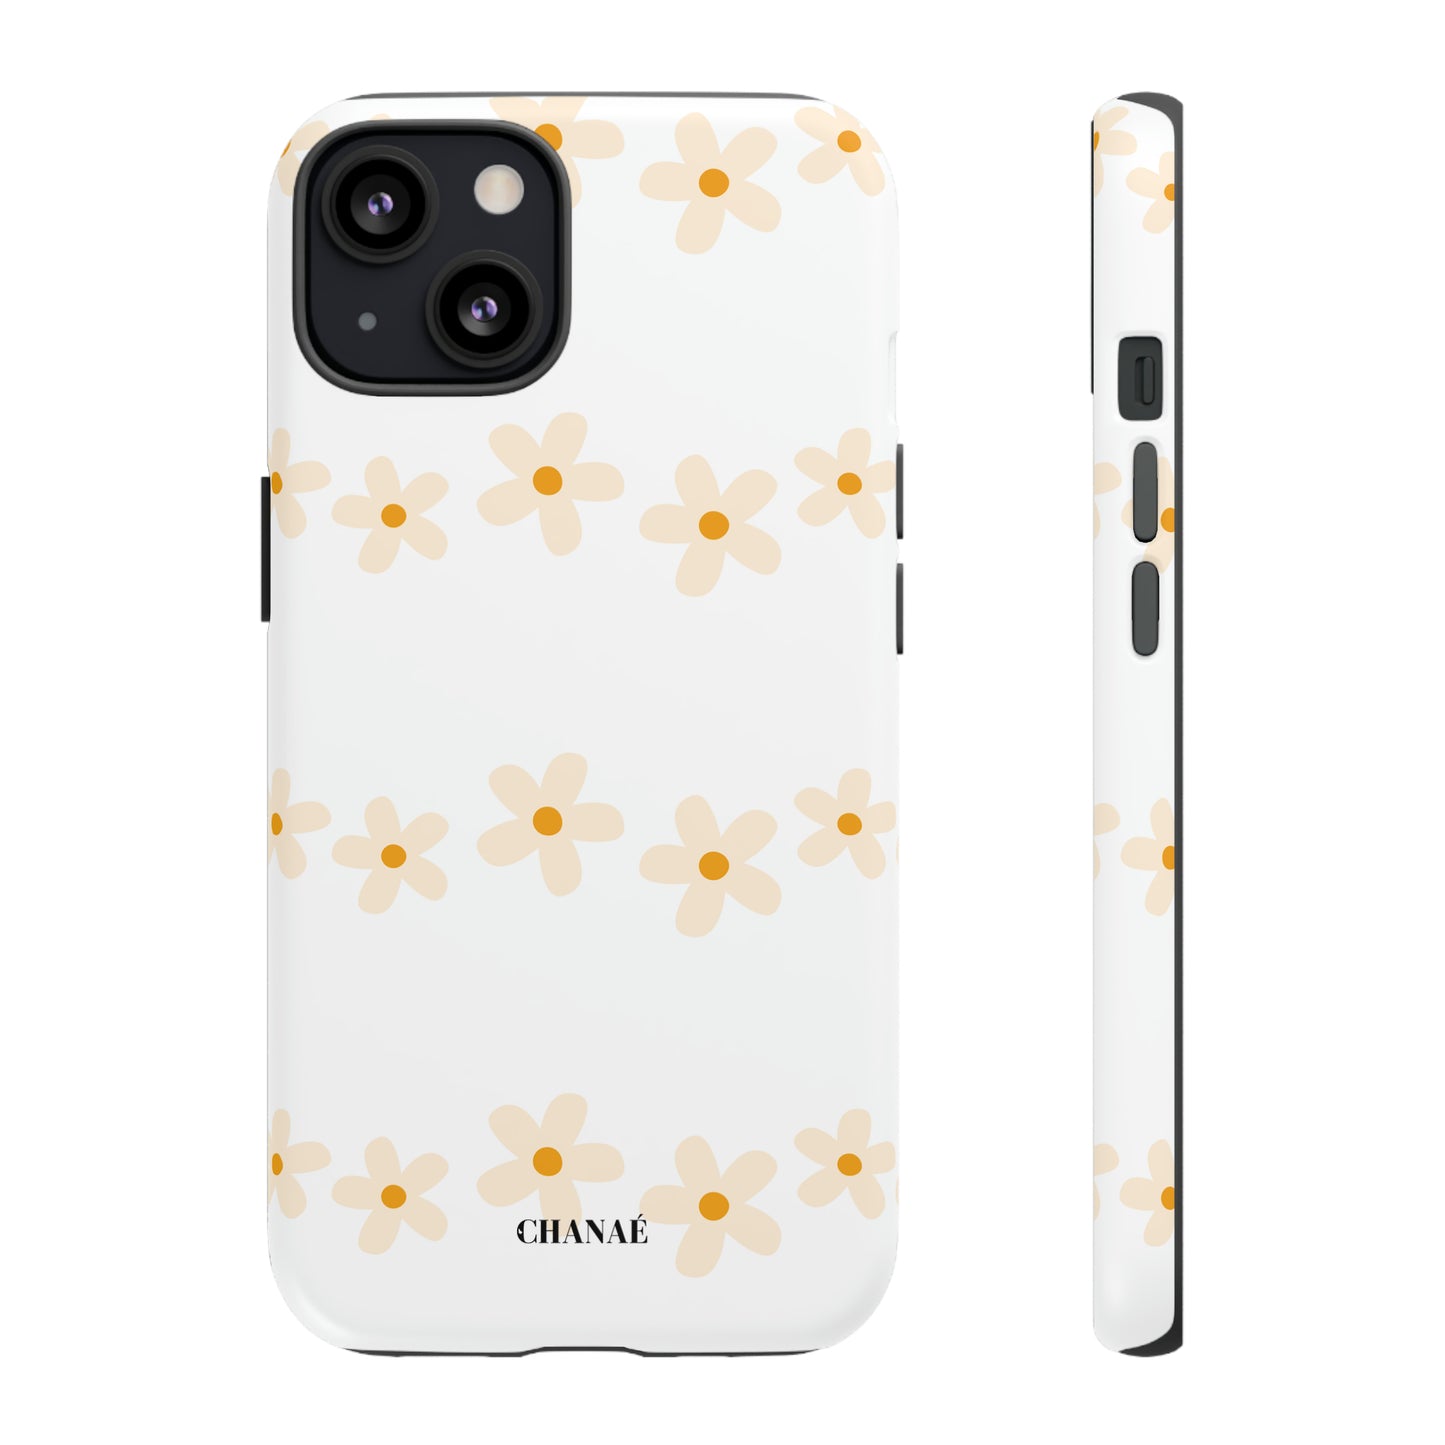 Les Fleurs iPhone "Tough" Case (White)